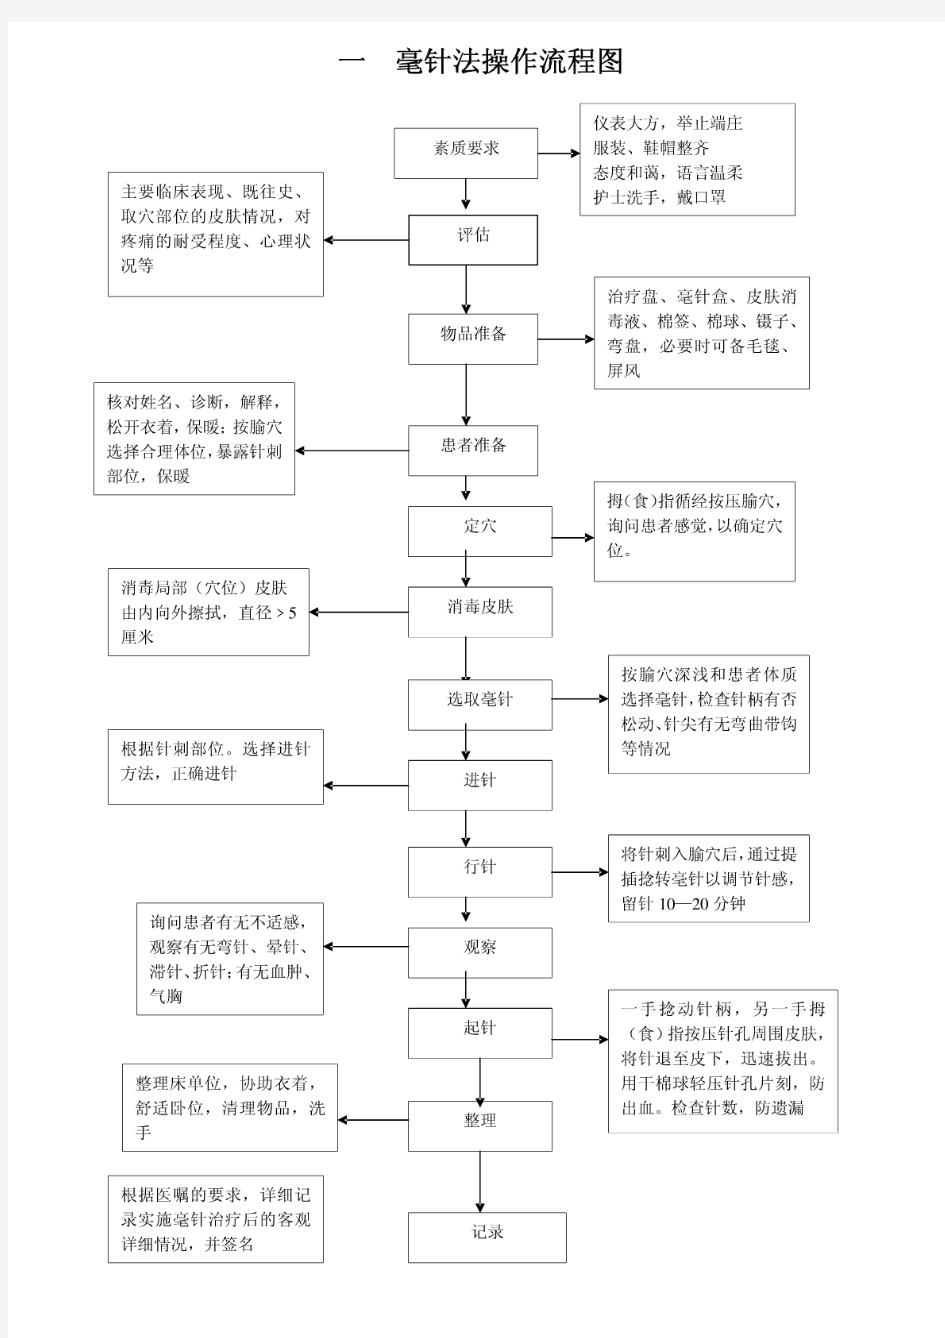 中医操作流程图(全)